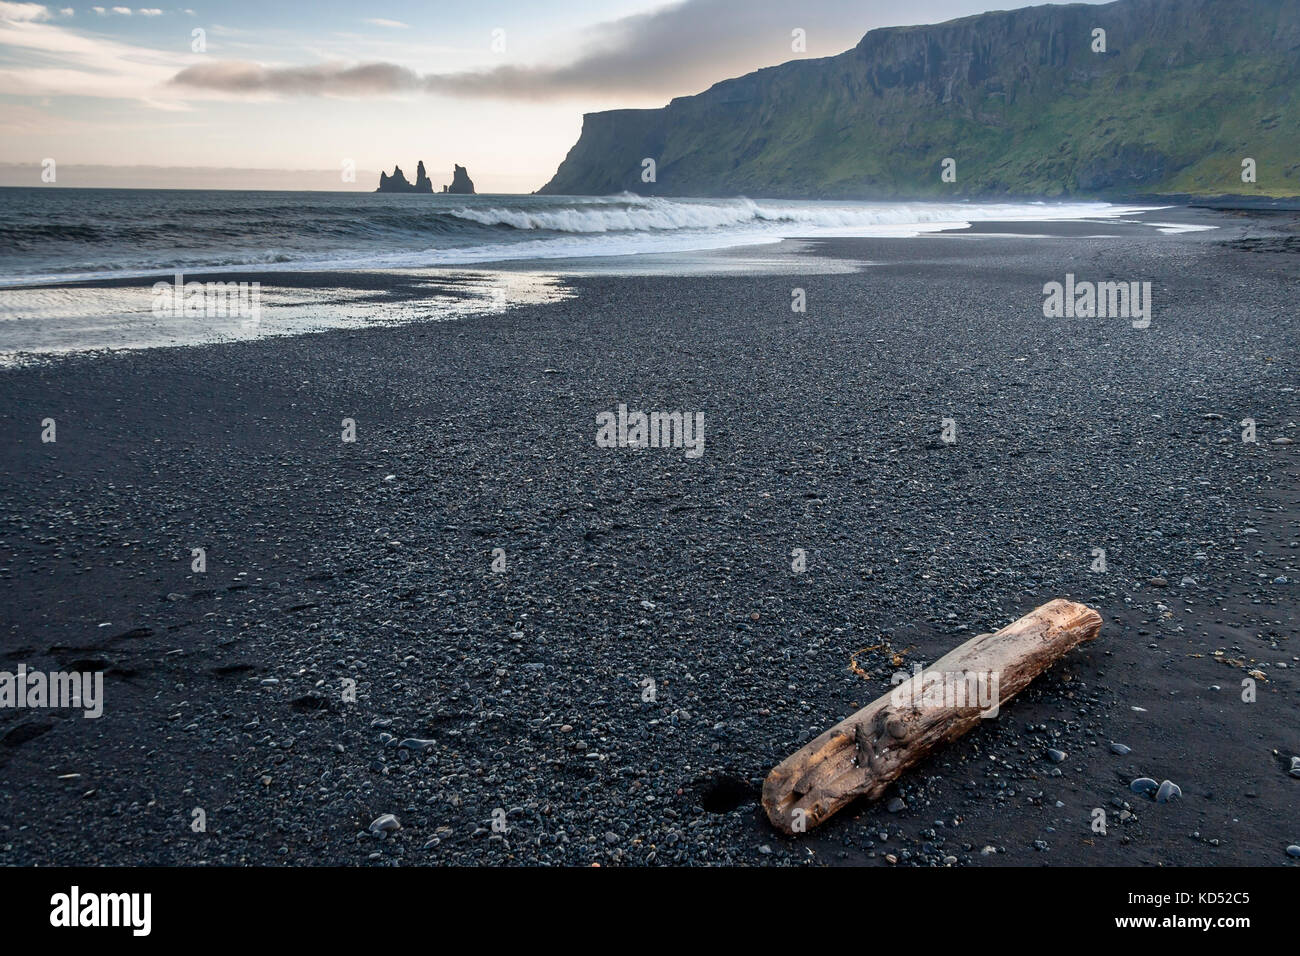 Des formations de roche de reynisdrangar et le mont reynisfjall. plage de sable noir de vik, le sud de l'islande Banque D'Images